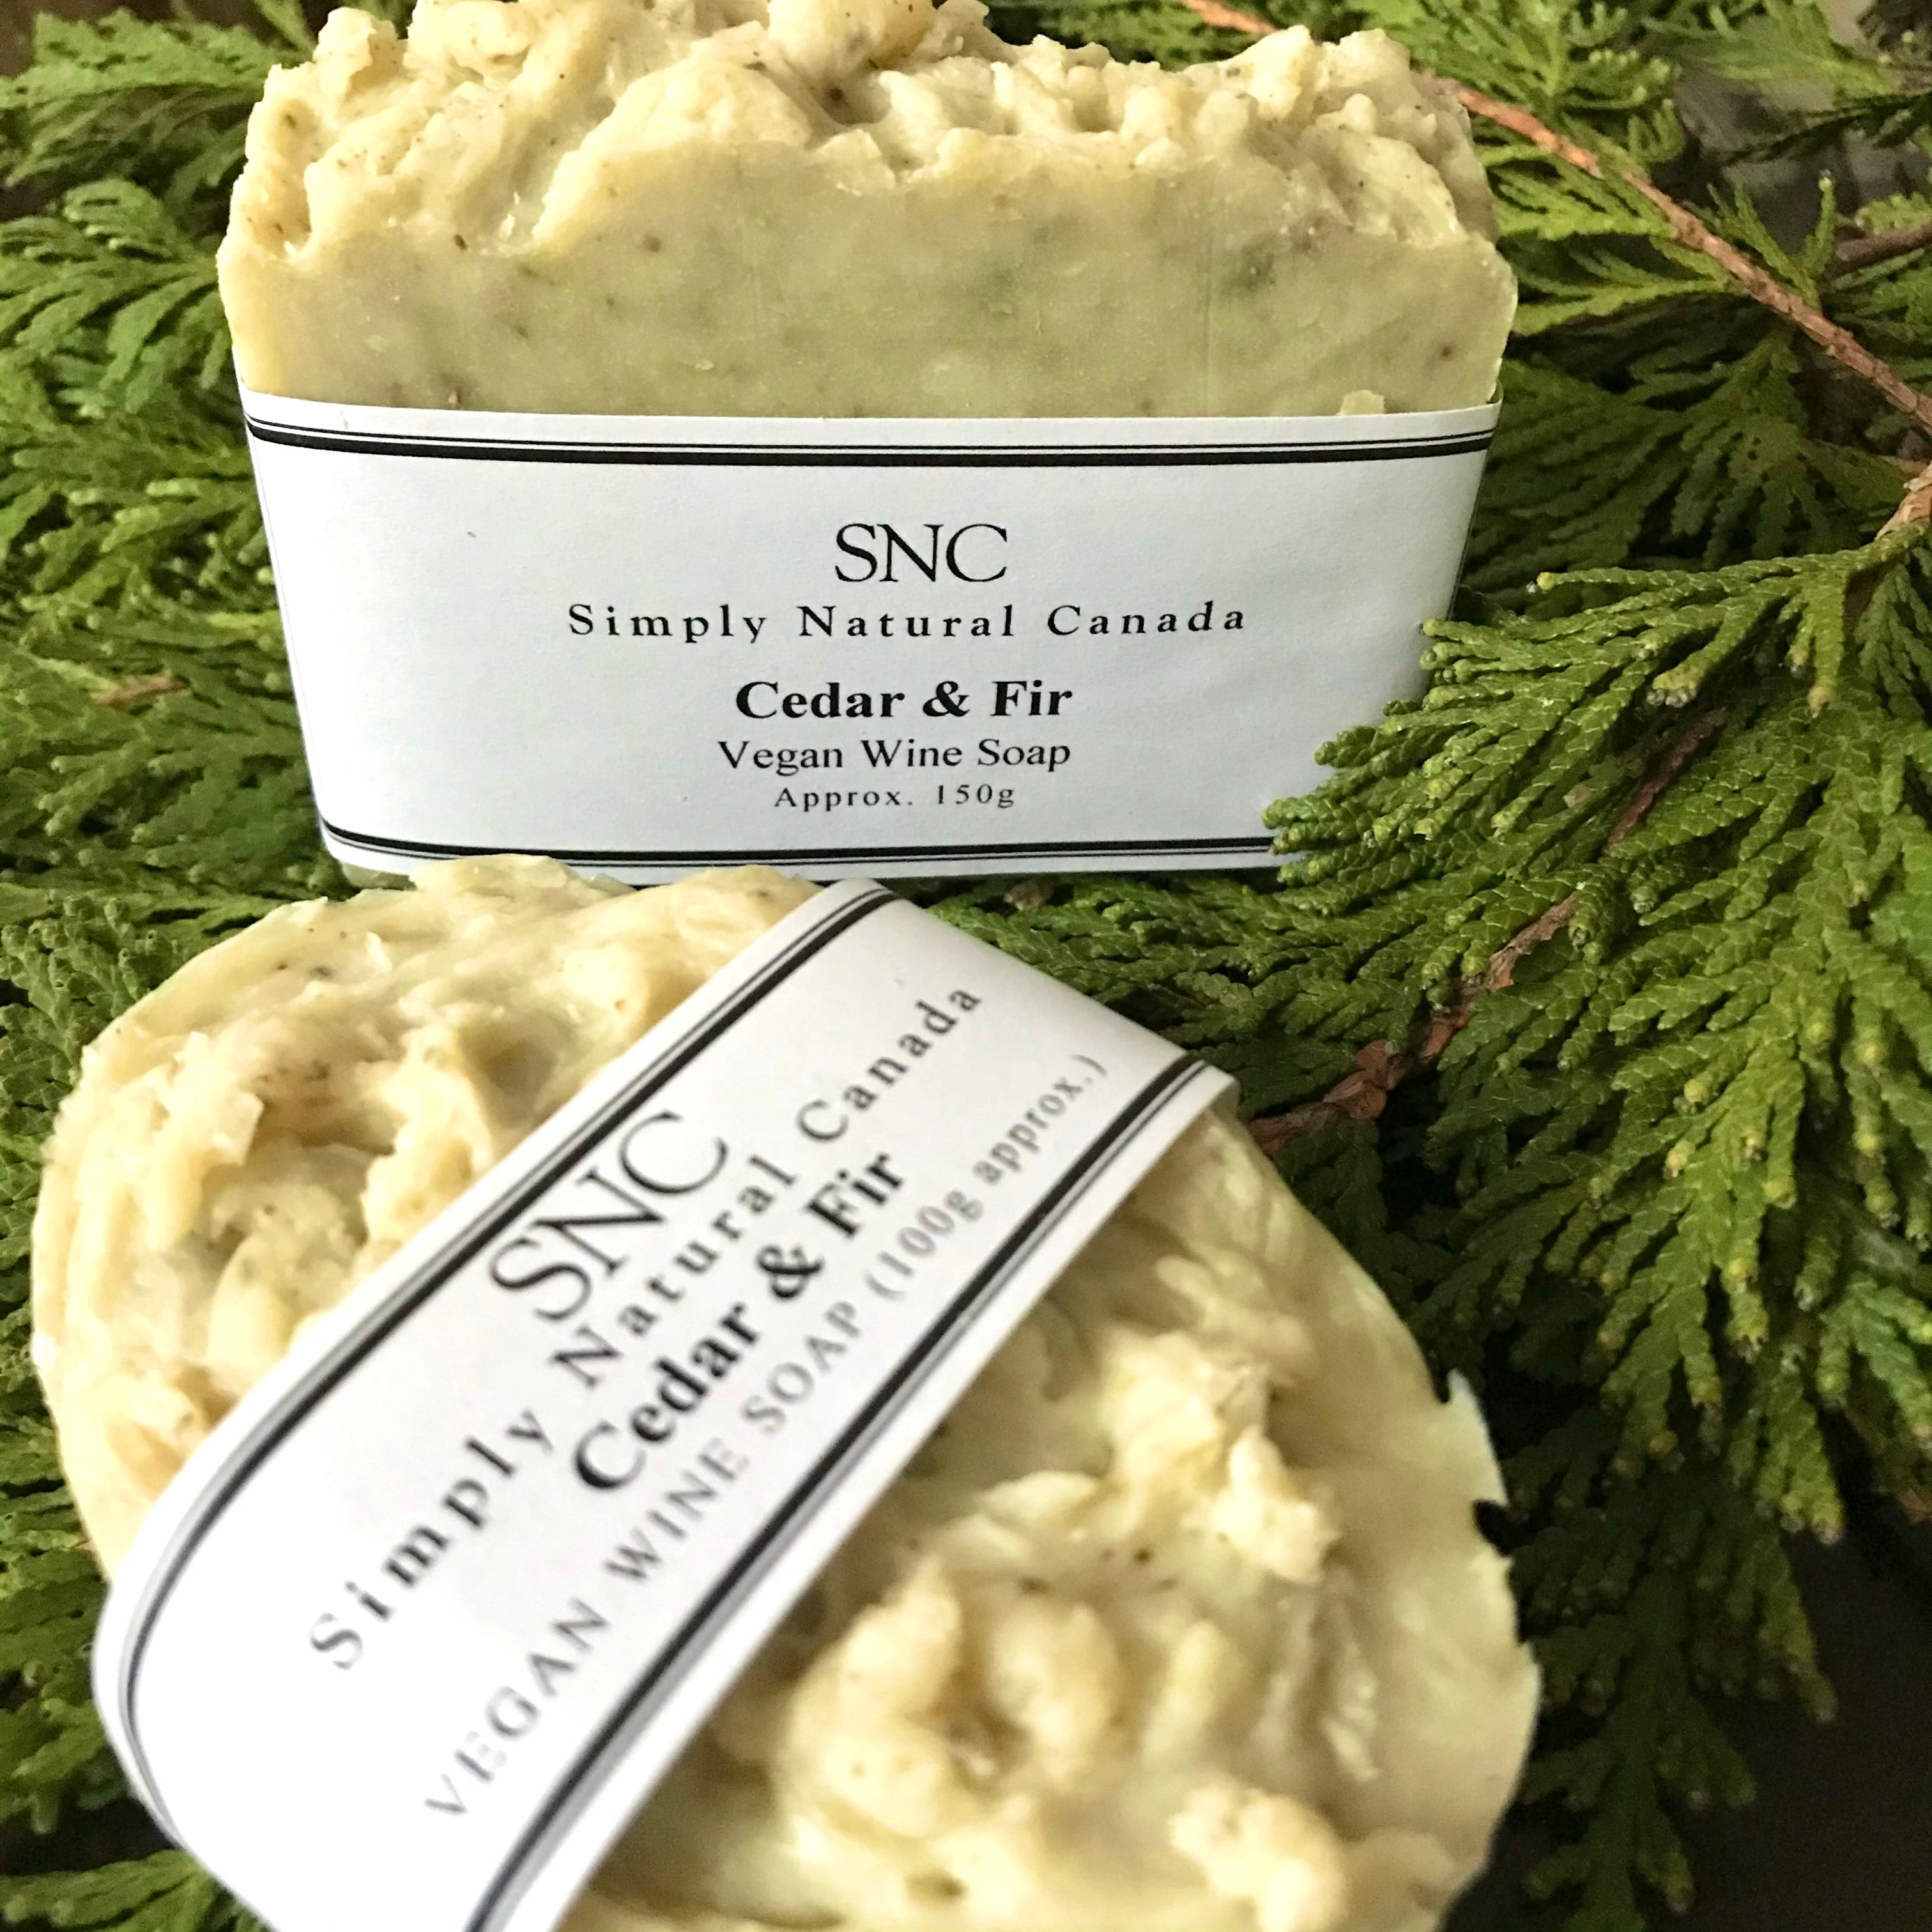 cedar fir vegan wine soap made in canada